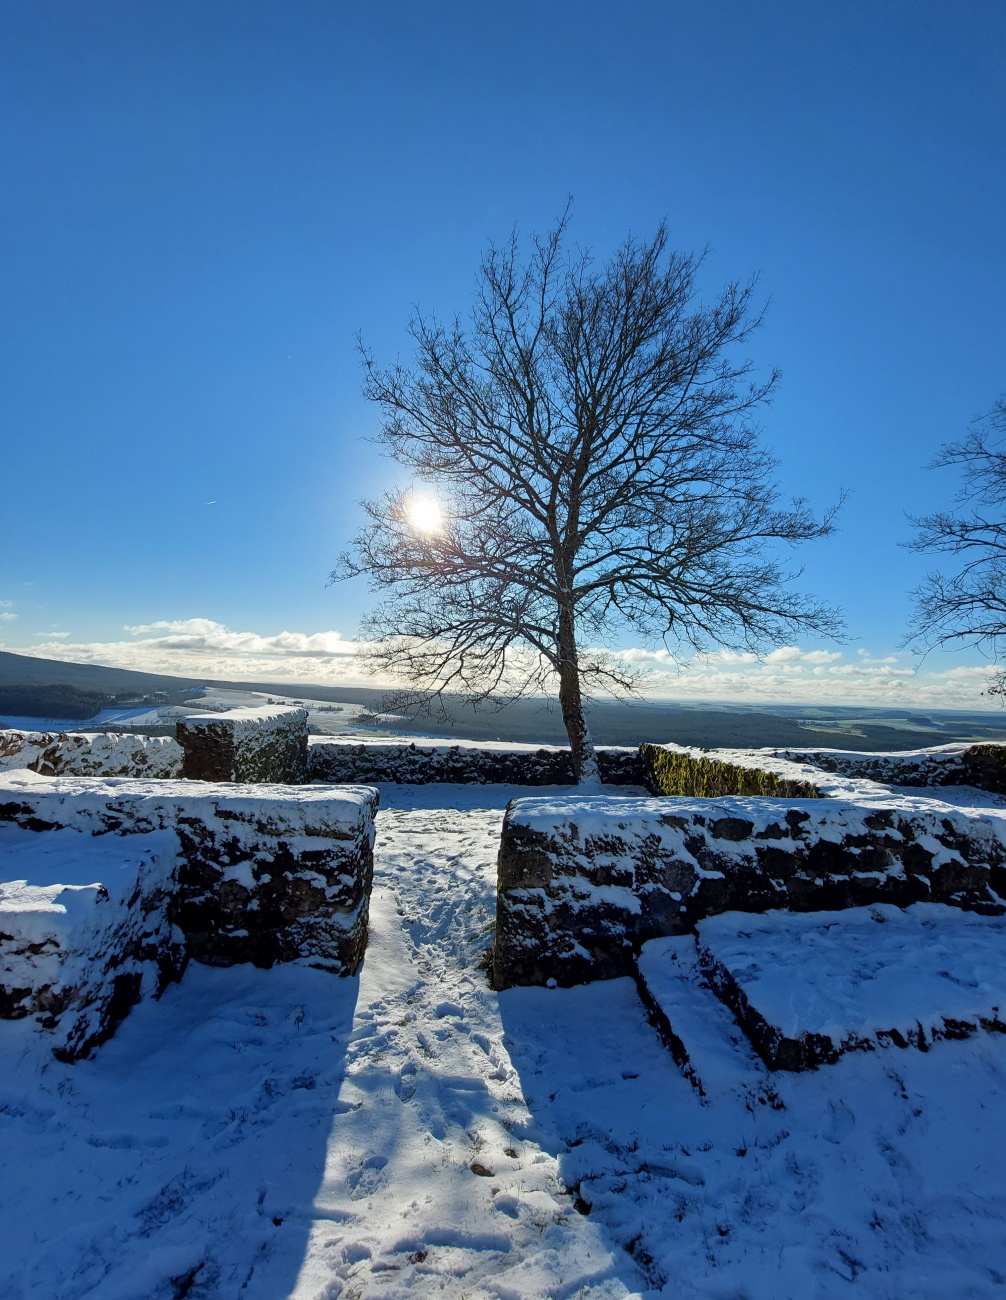 Foto: Martin Zehrer - Herrliche Winter-Wanderung zum waldecker Schlossberg.<br />
Sonne, blauer Himmel und ein Rucksack mit guter Brotzeit.<br />
Was für ein wunderschöner Tag zu zweit! :-) 